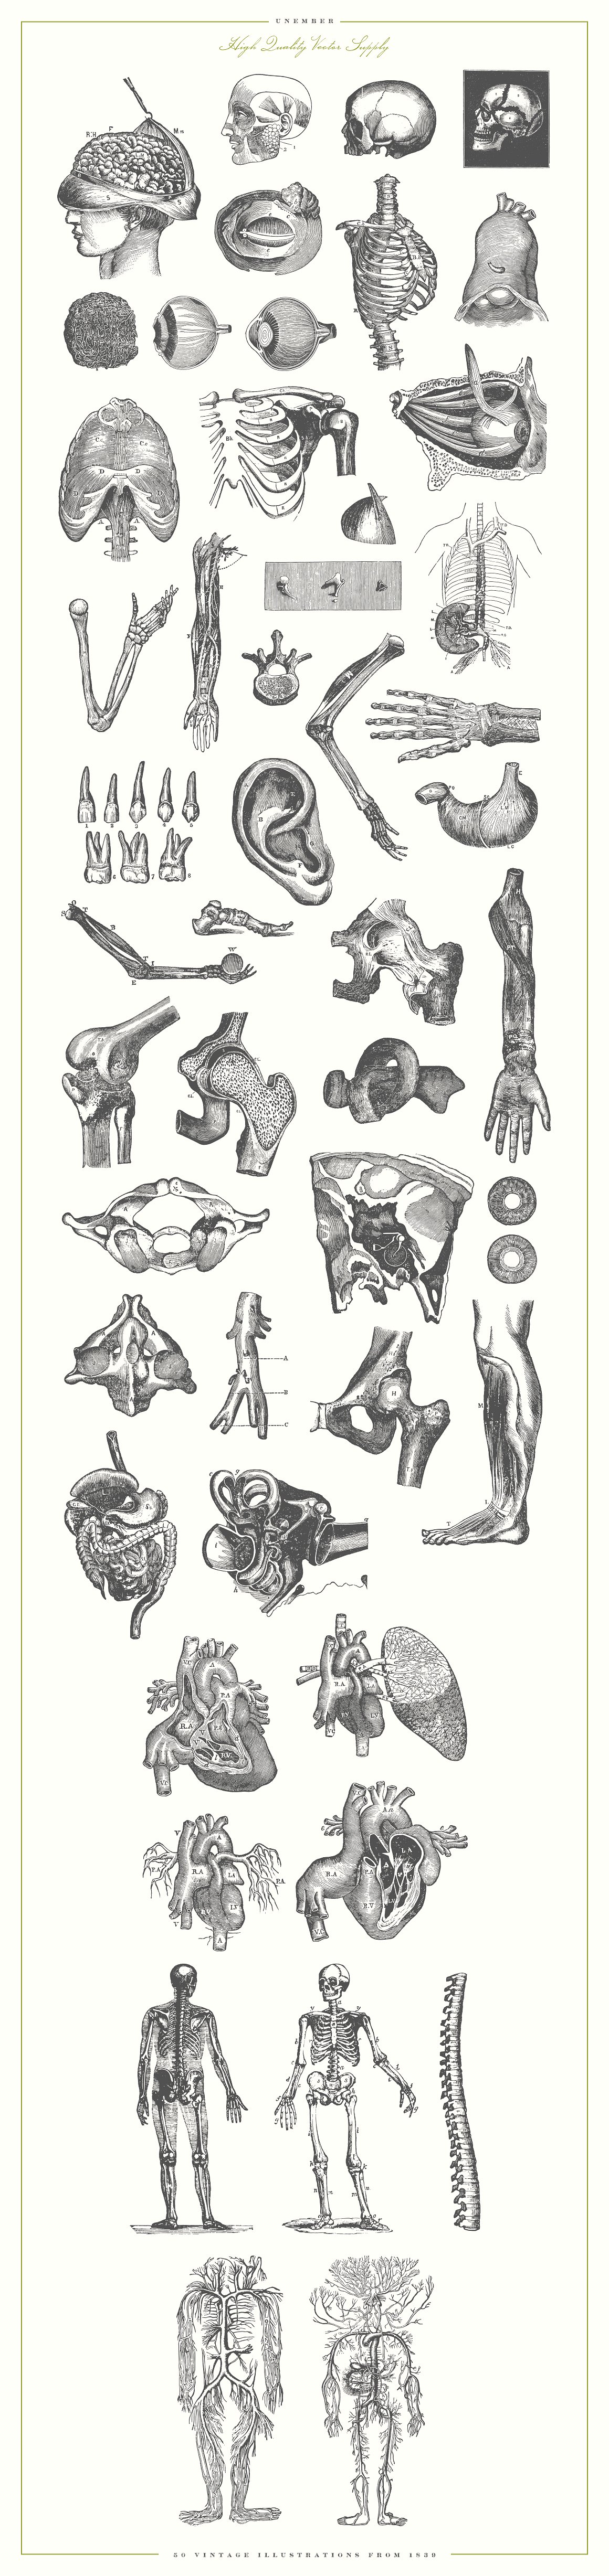 复古手绘人体解剖器官插图设计素材Unember Vector